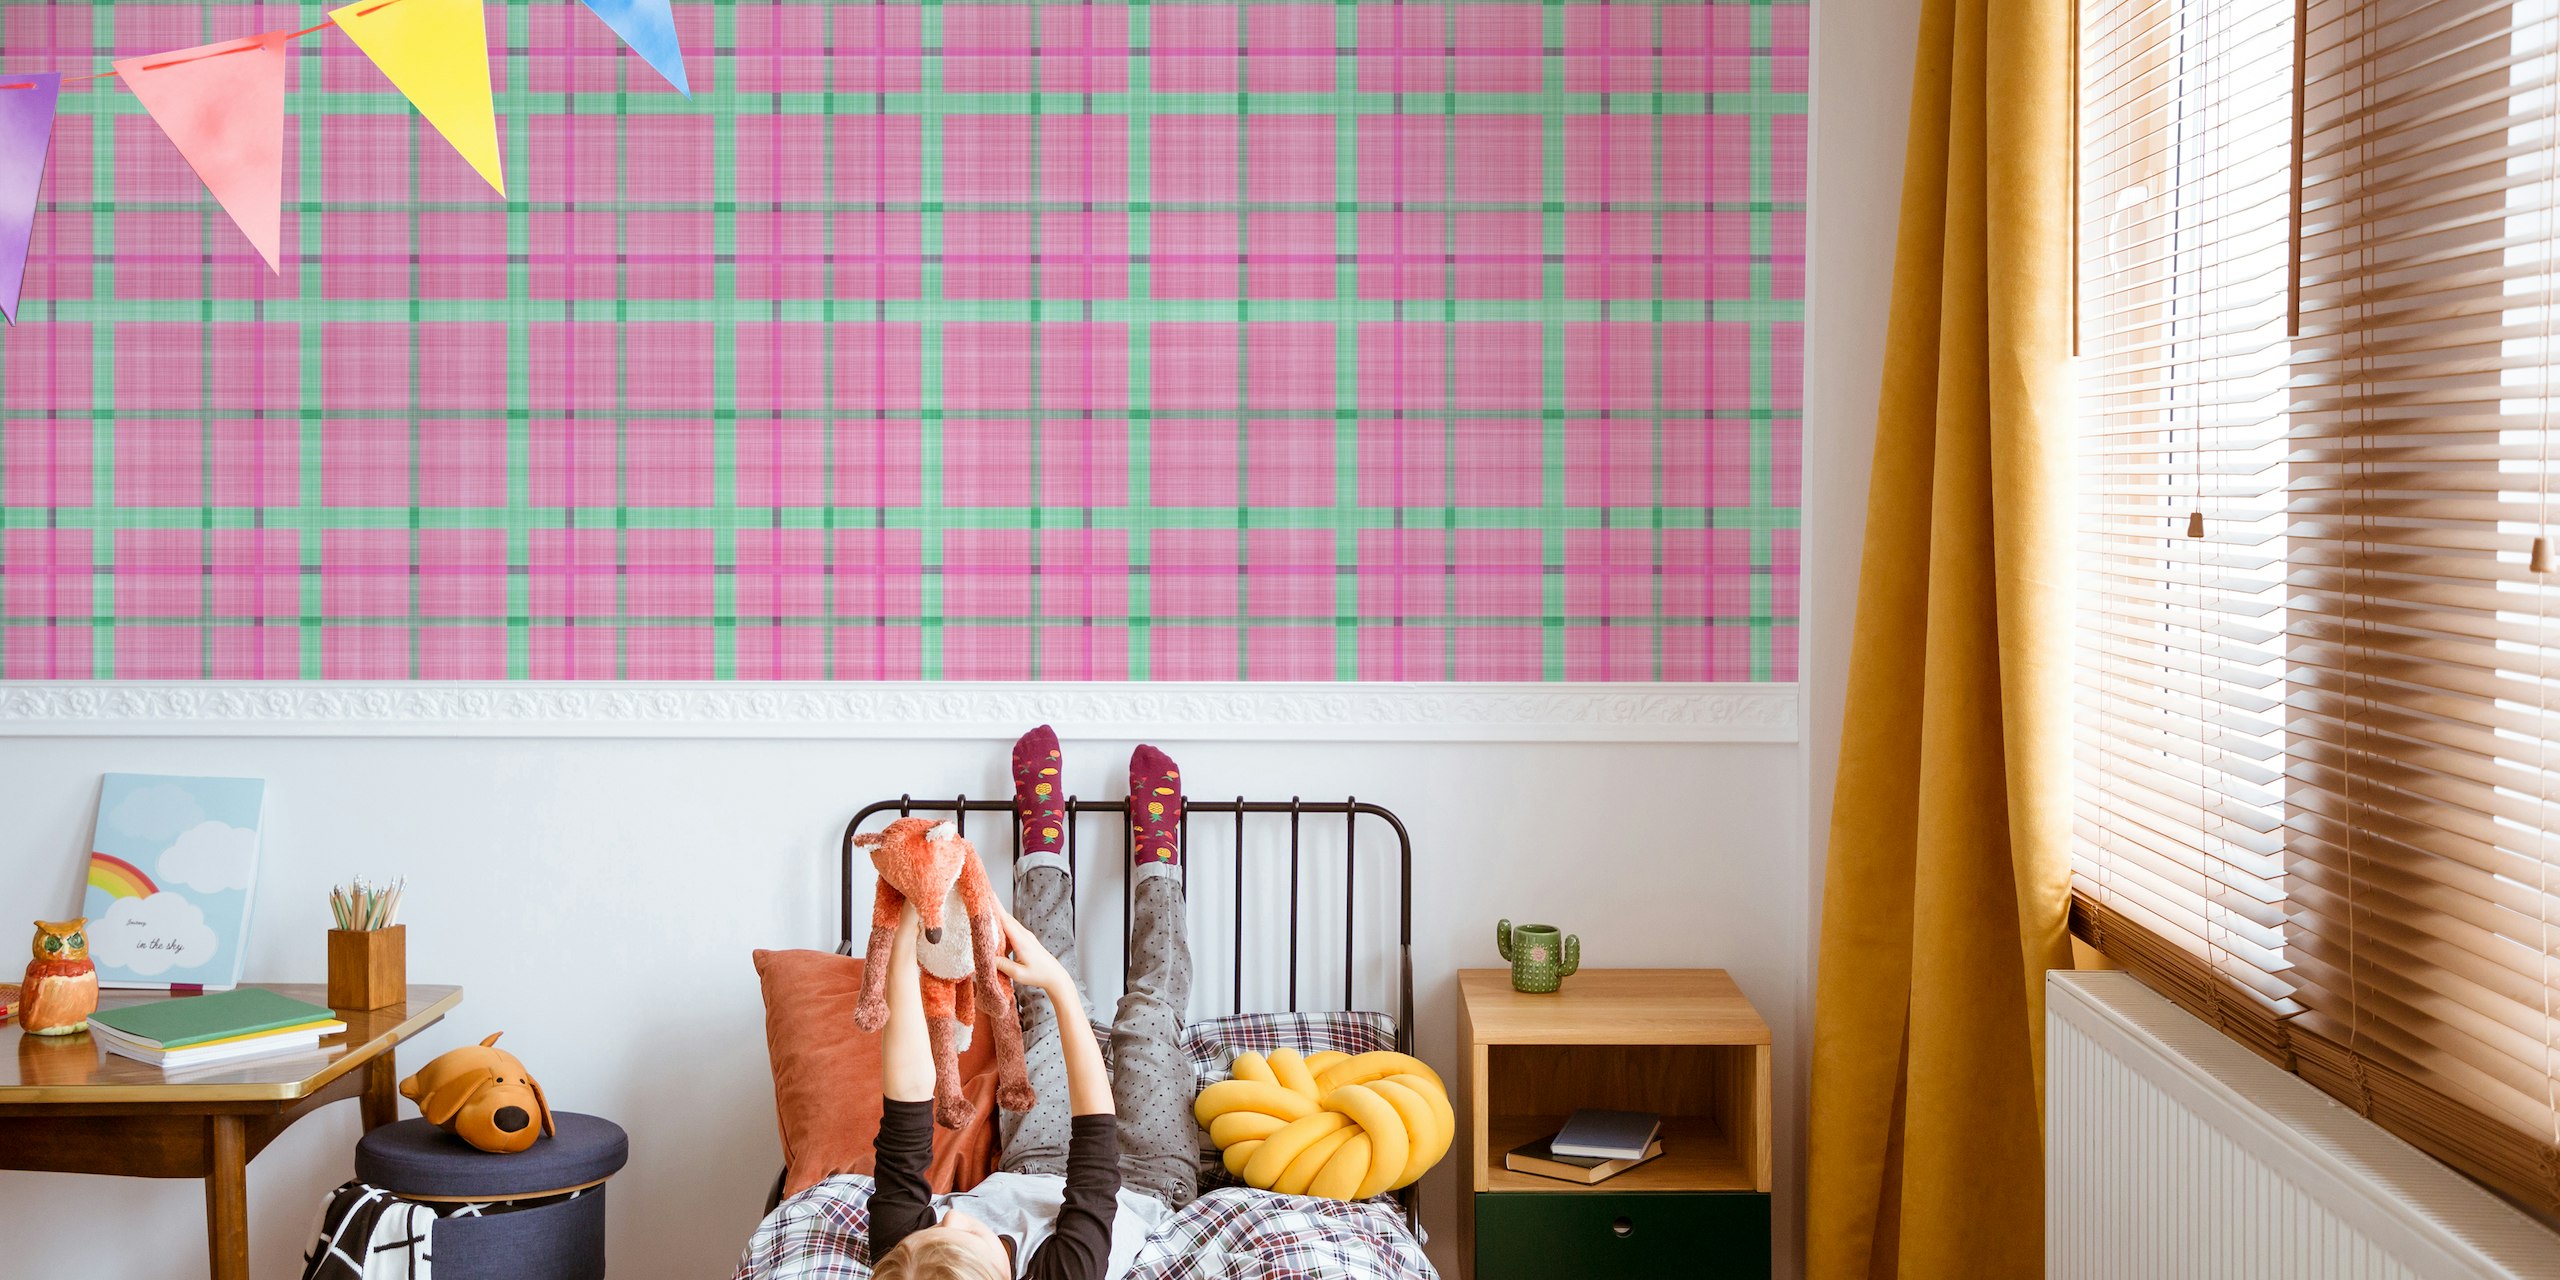 Fototapeta s růžovým a modrozeleným ginghamovým kostkovaným vzorem pro moderní domácí dekoraci.